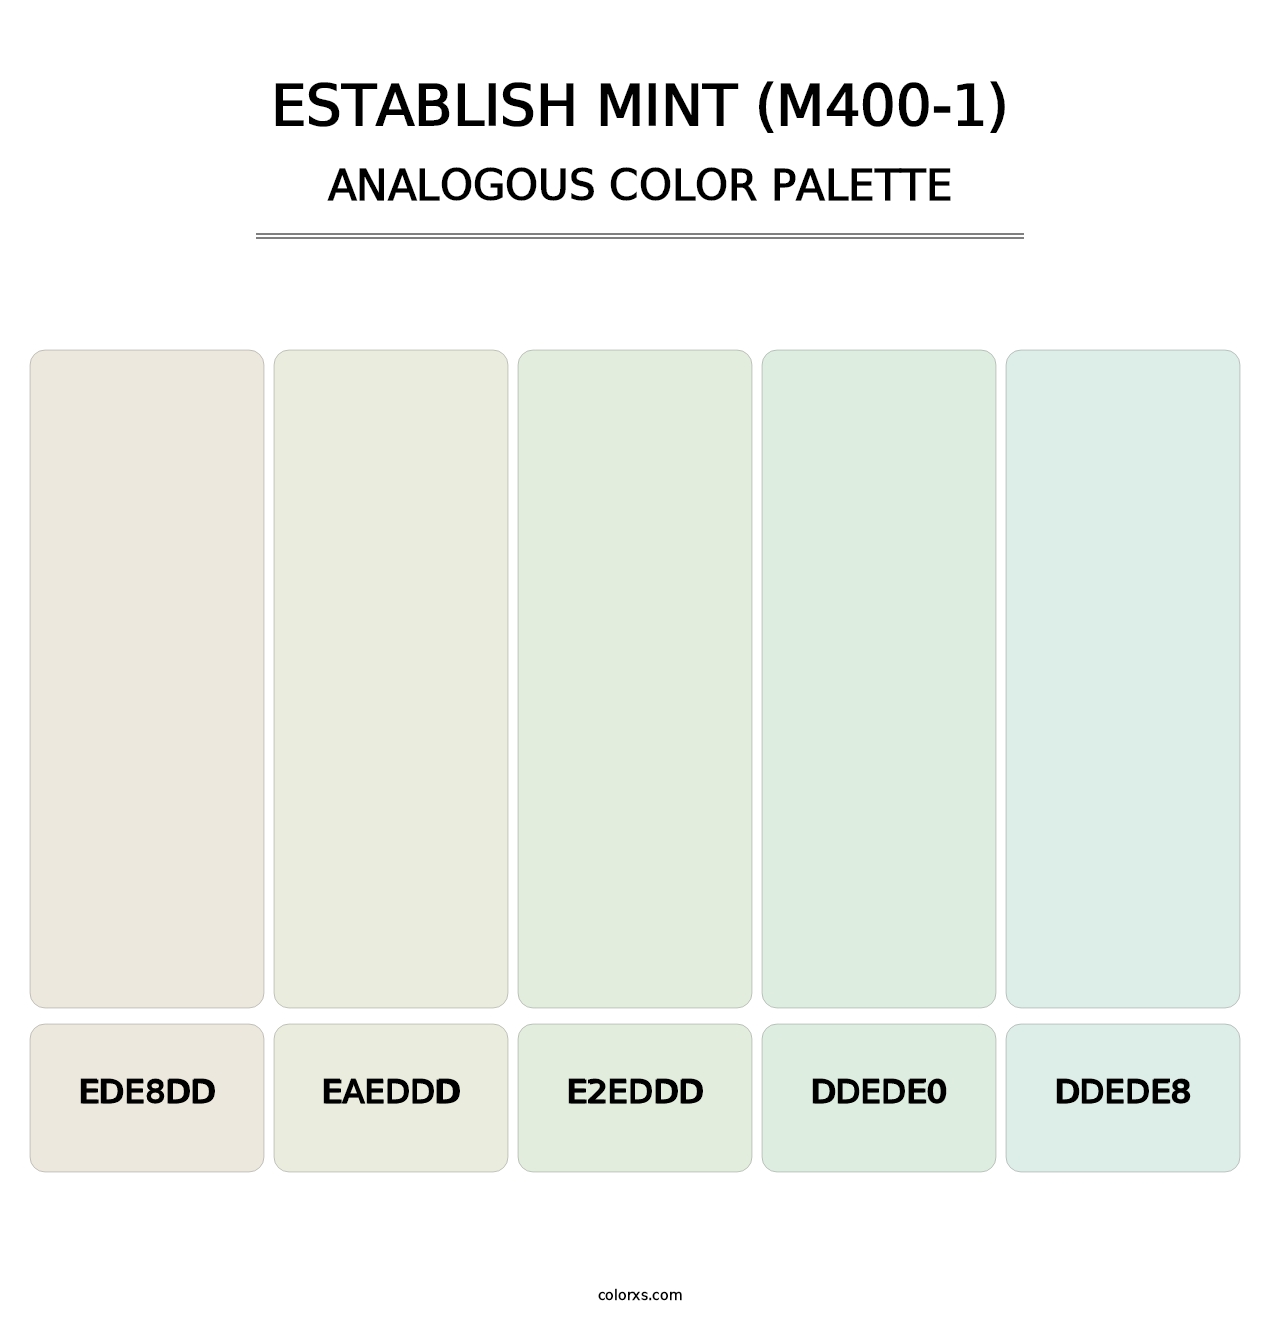 Establish Mint (M400-1) - Analogous Color Palette